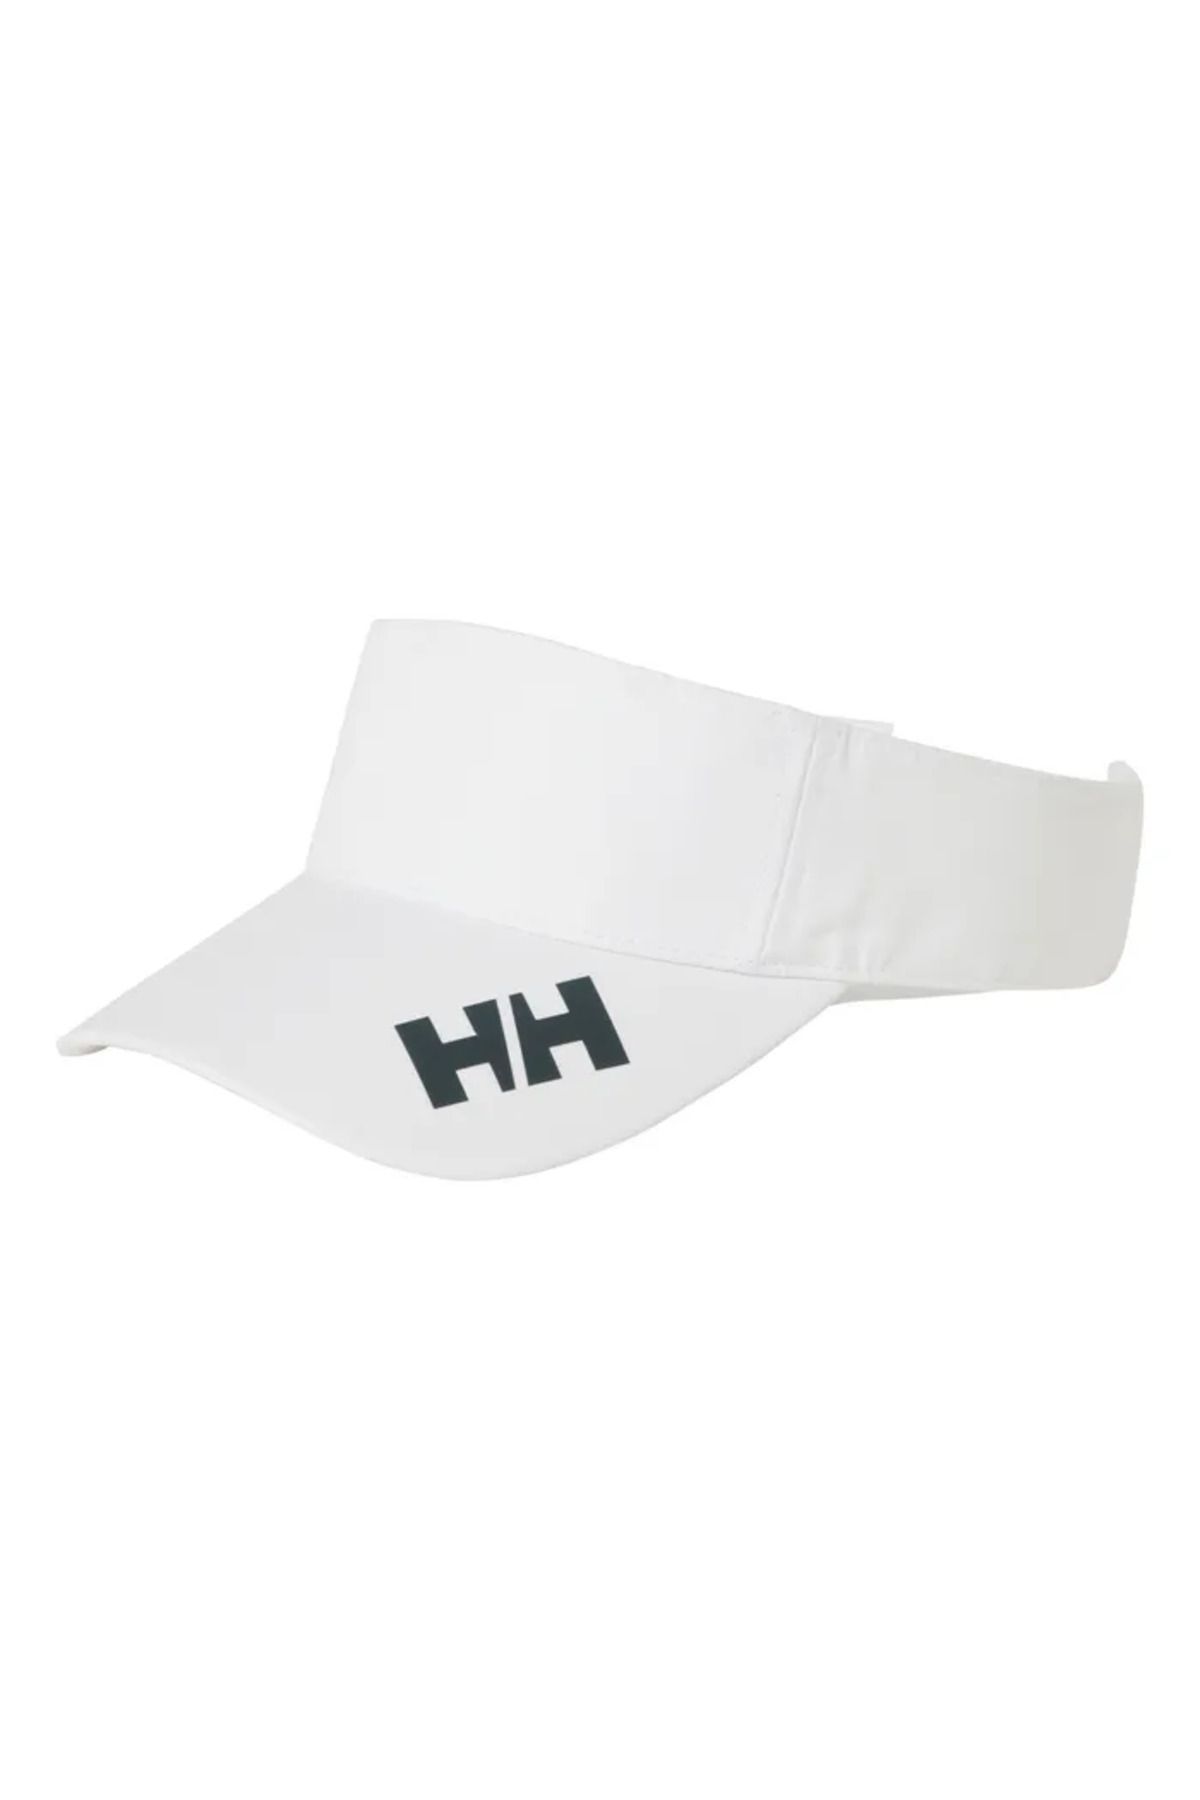 Helly Hansen Helly Hansen Crew Vısor 2.0 Şapka Unısex Beyaz Şapka Hha.67545-hha.001